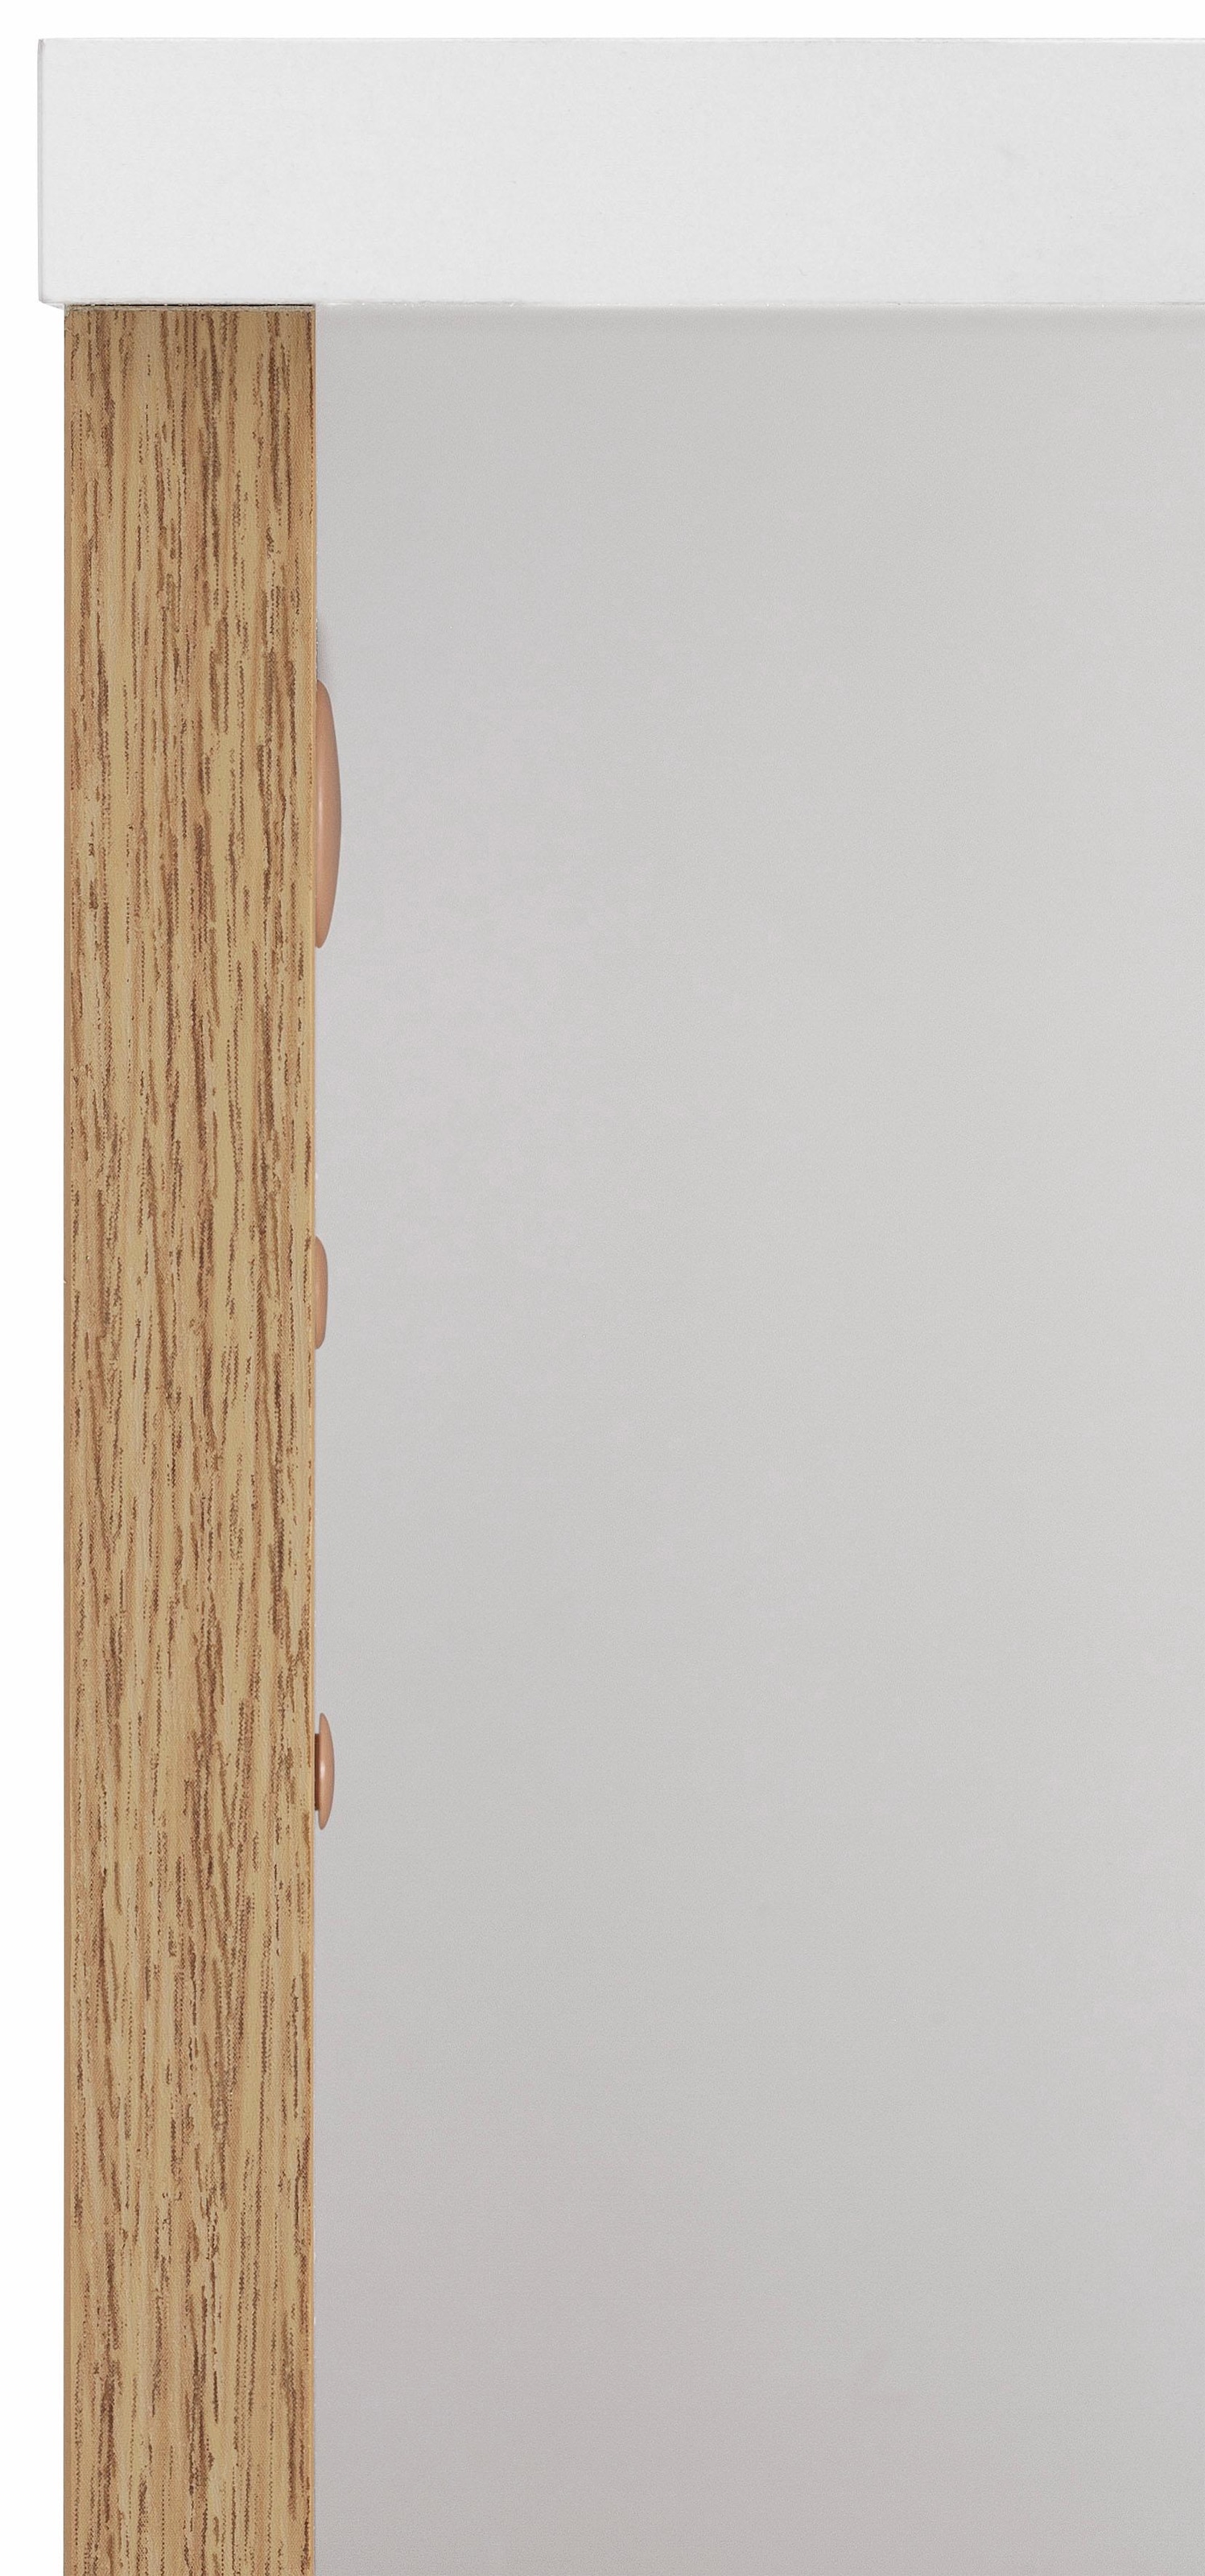 Schildmeyer Midischrank »Rhodos«, Breite 30 cm, verstellbarer Einlegeboden, wechselbarer Türanschlag